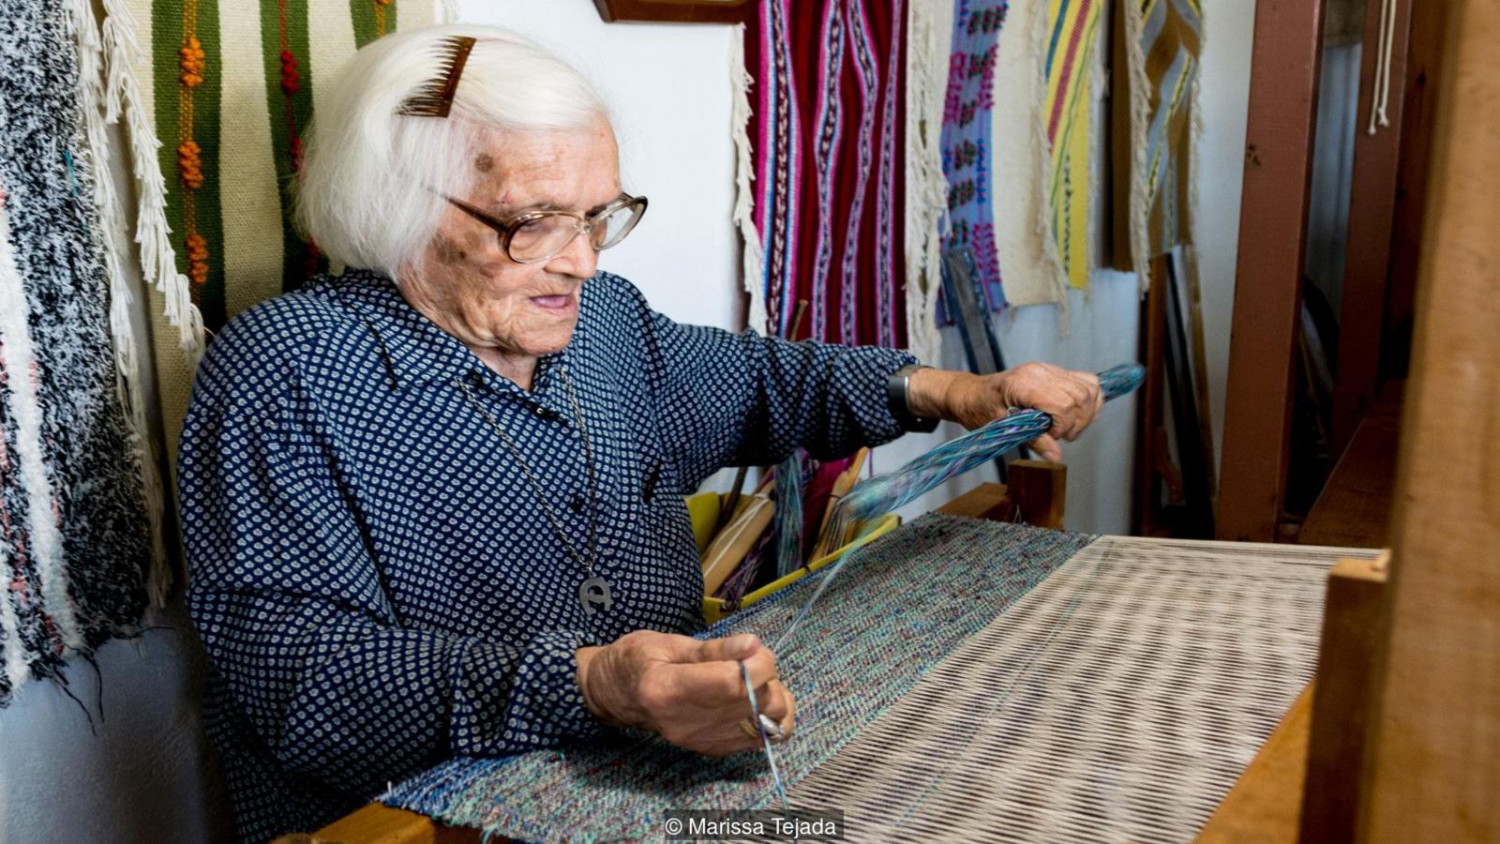 Cụ Ioanna Proiou đã 105 tuổi nhưng hàng ngày vẫn làm công việc dệt vải rất nhanh nhẹn. (Ảnh: Marissa Tejada)